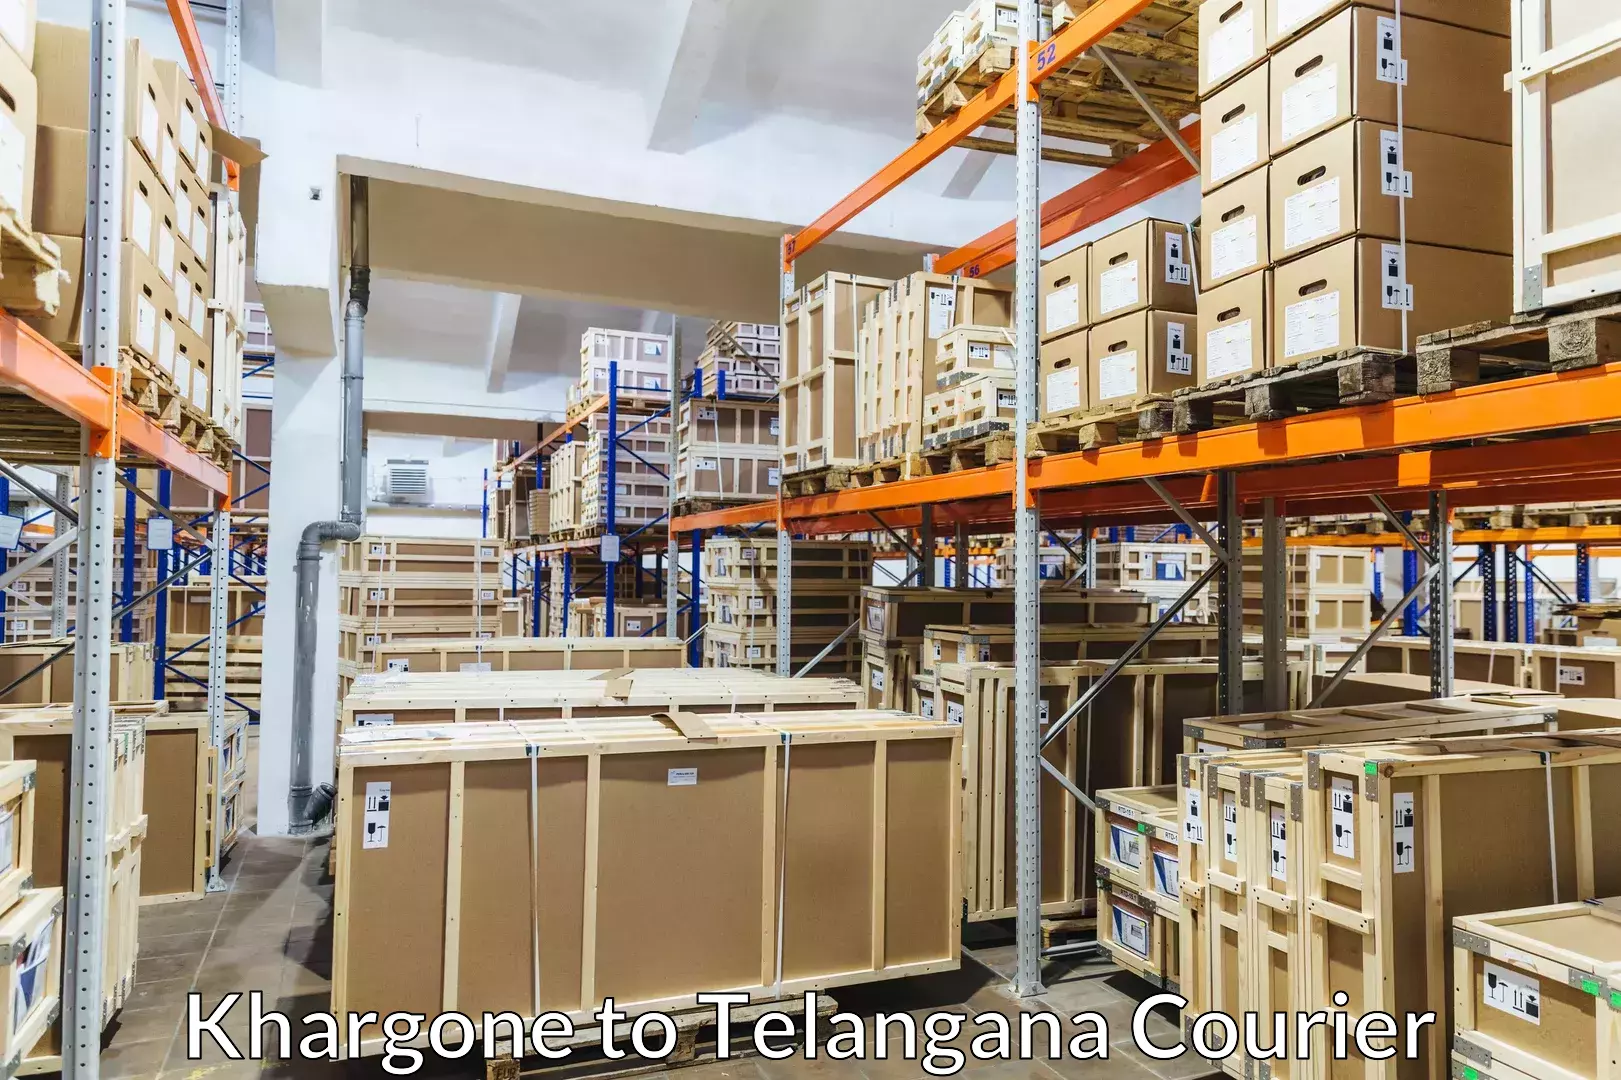 Luggage transport consulting Khargone to Telangana